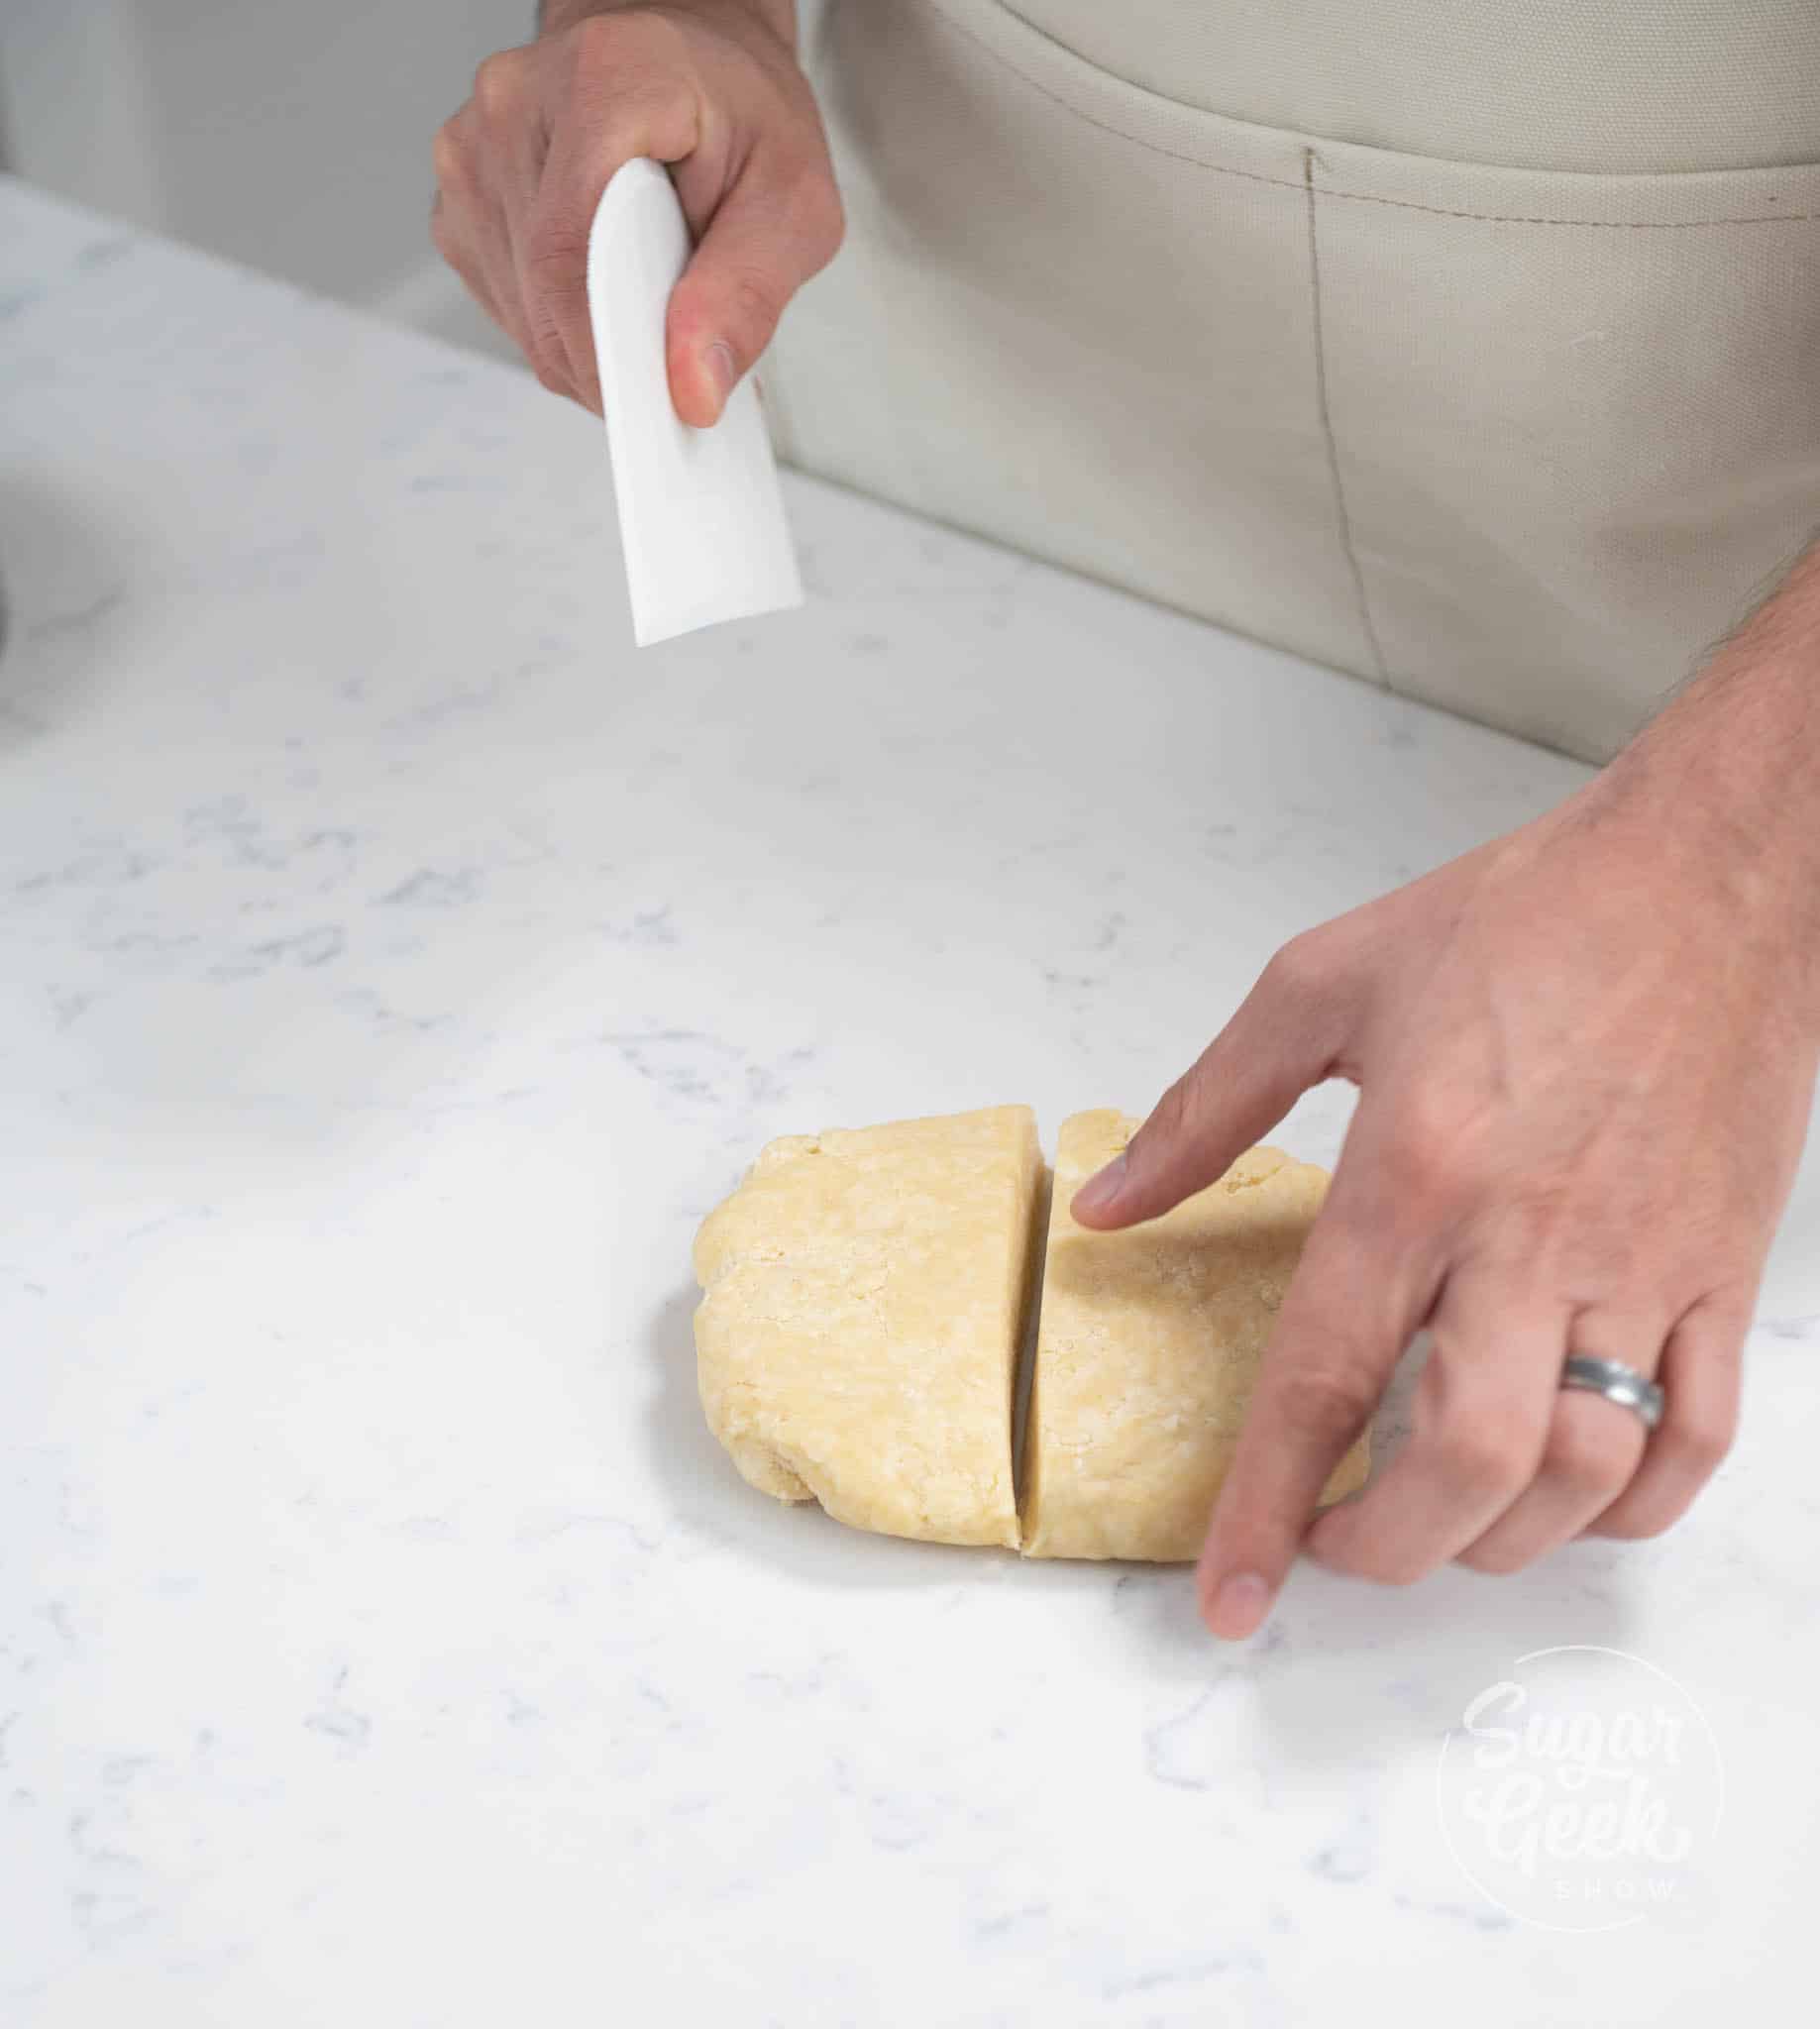 hands using scraper to cut dough in half